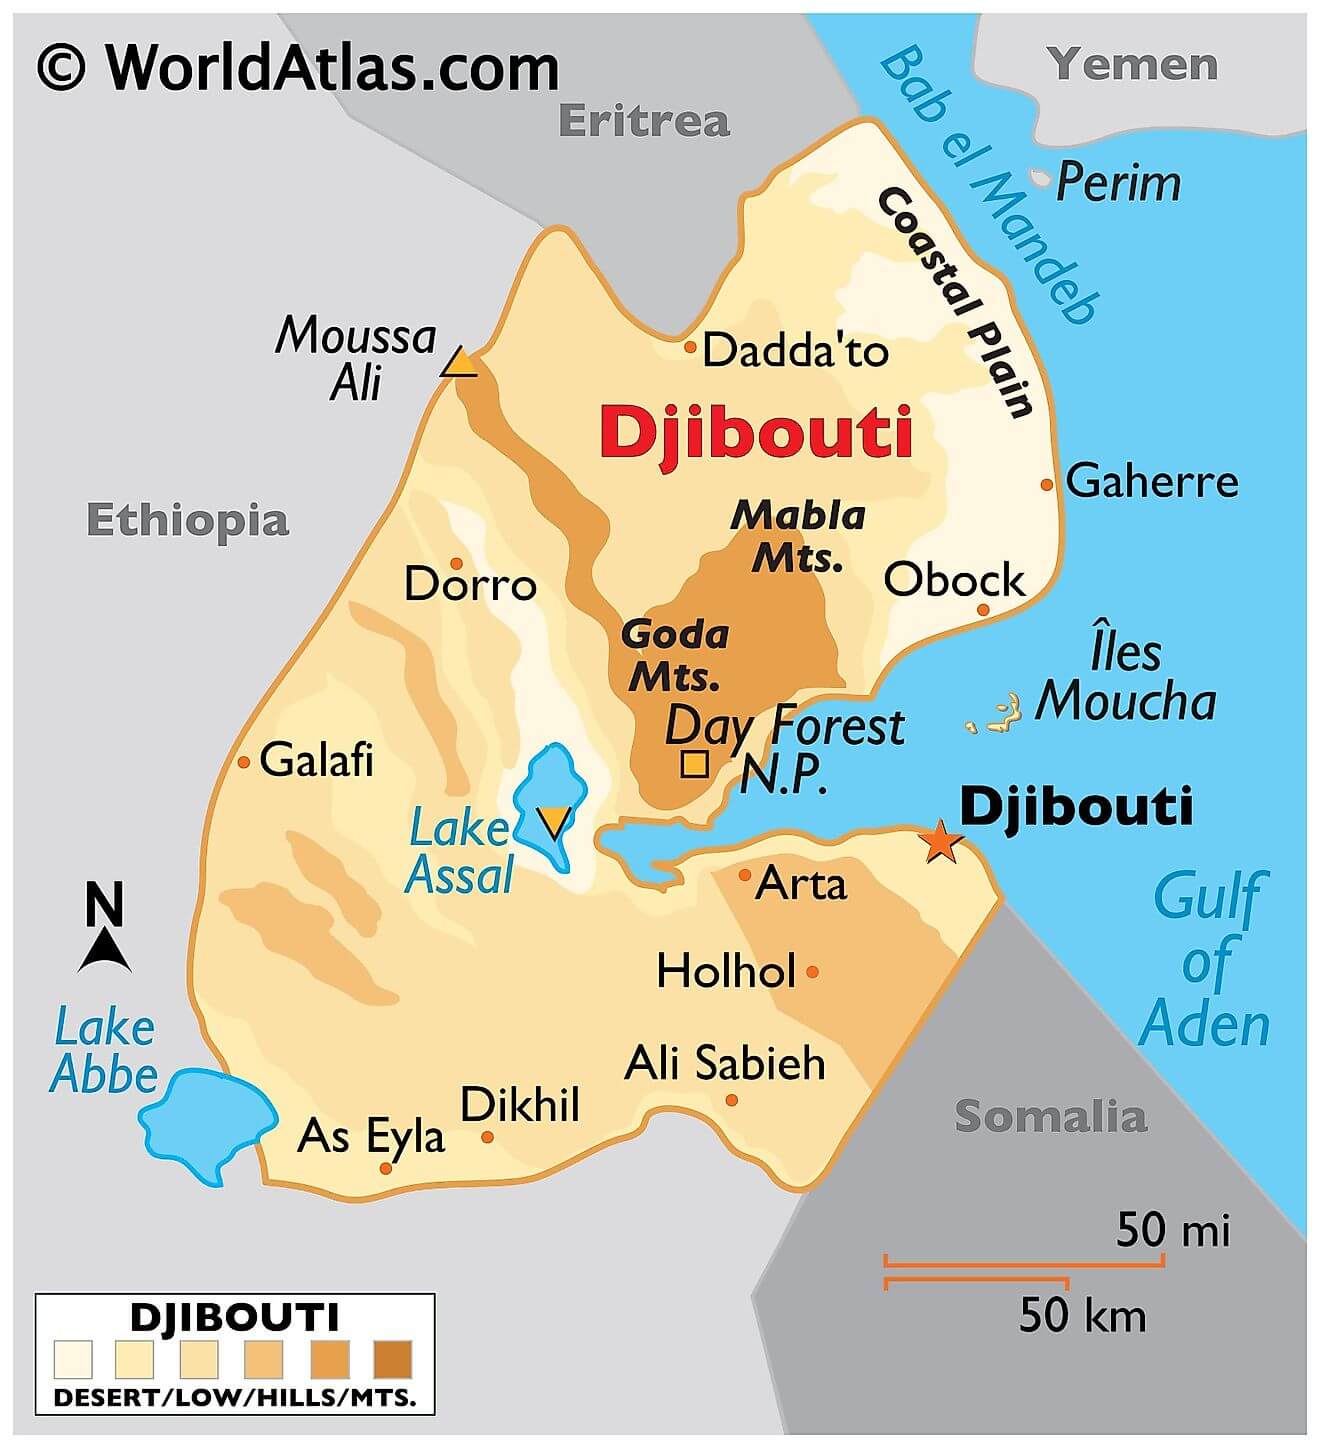 Bản đồ vật lý của Djibouti